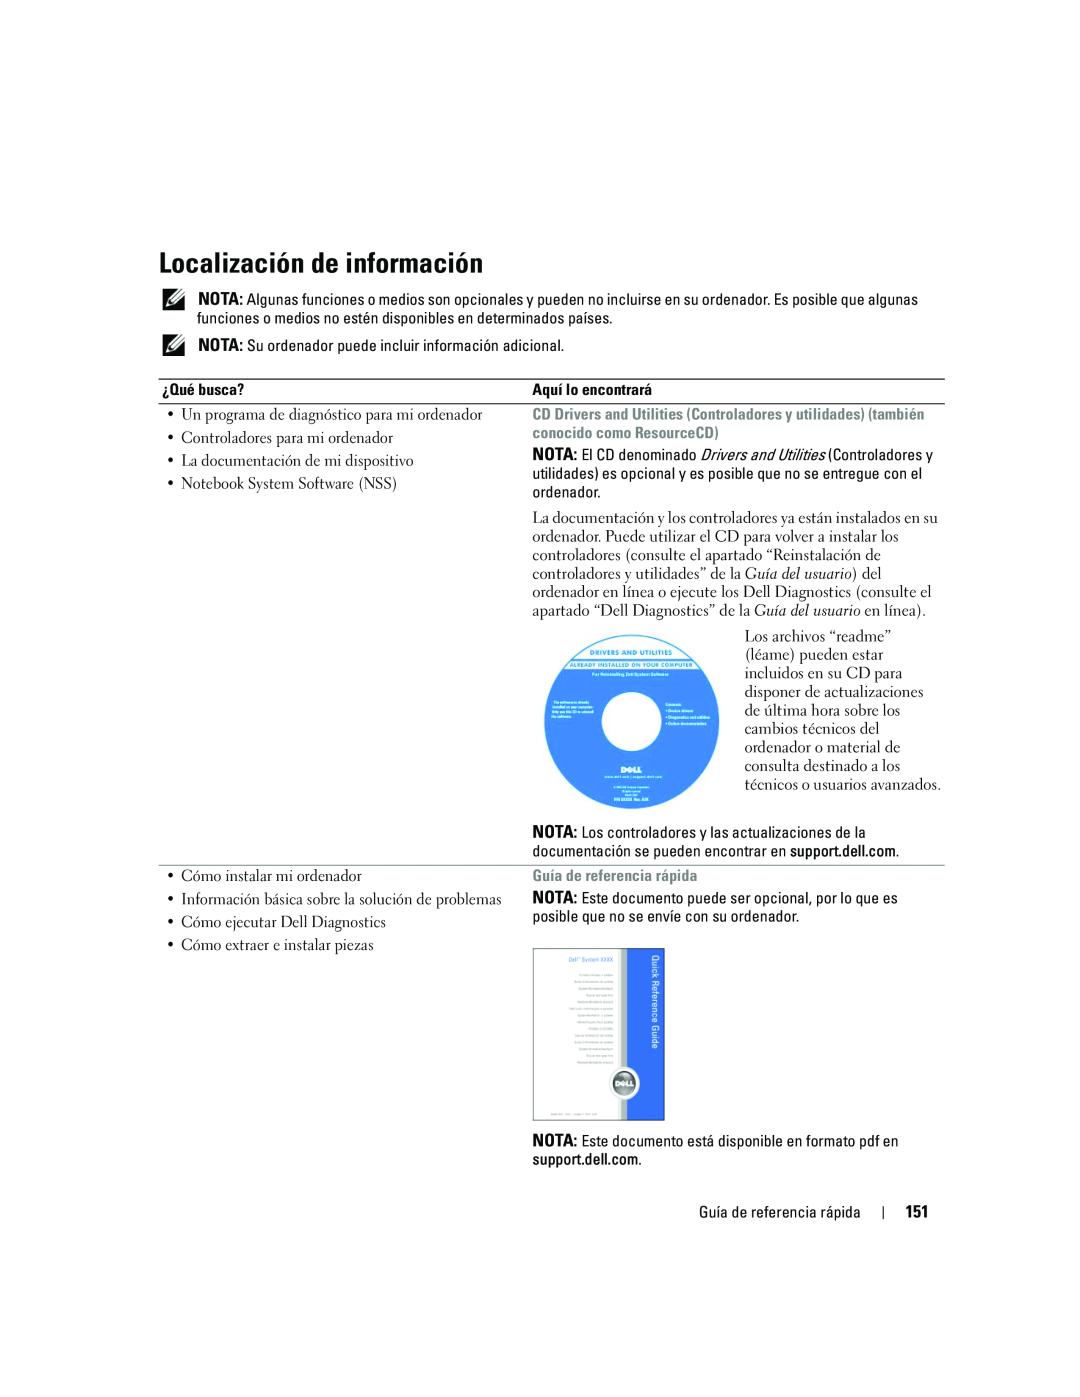 Dell ATG D620 manual Localización de información, conocido como ResourceCD, Guía de referencia rápida 